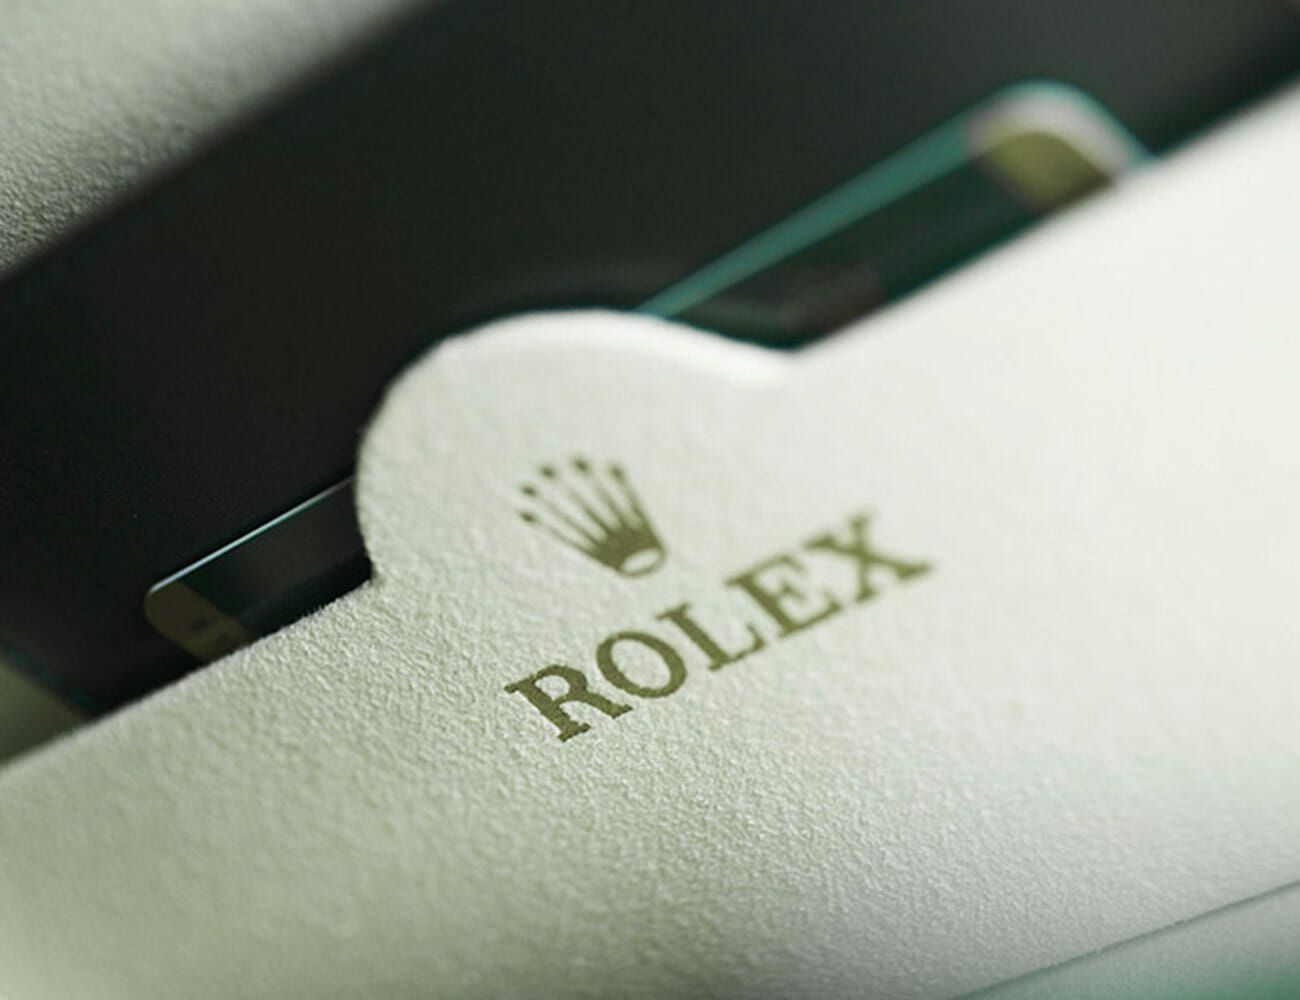 rolex authorized dealer online